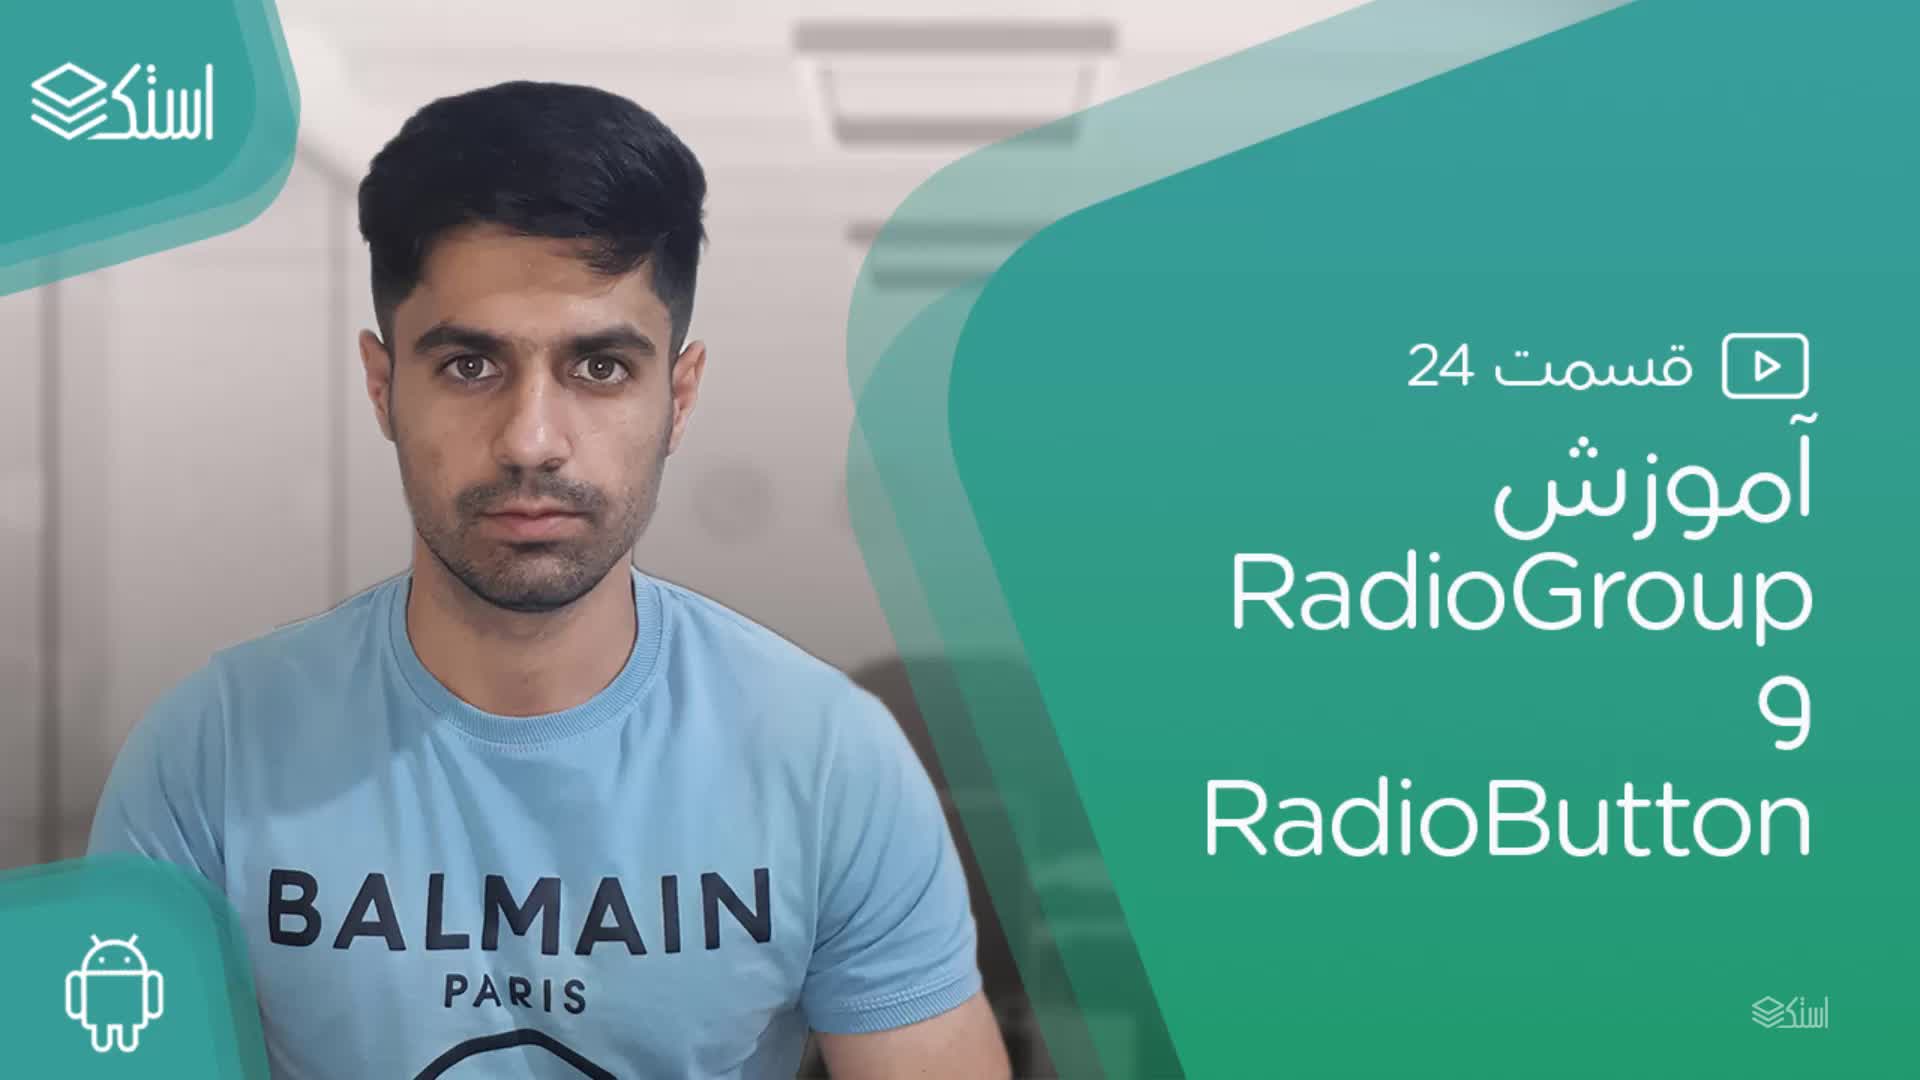 آموزش RadioGroup و RadioButton در اندروید (ویدیو + توضیحات) - قسمت 24 - استک لرن